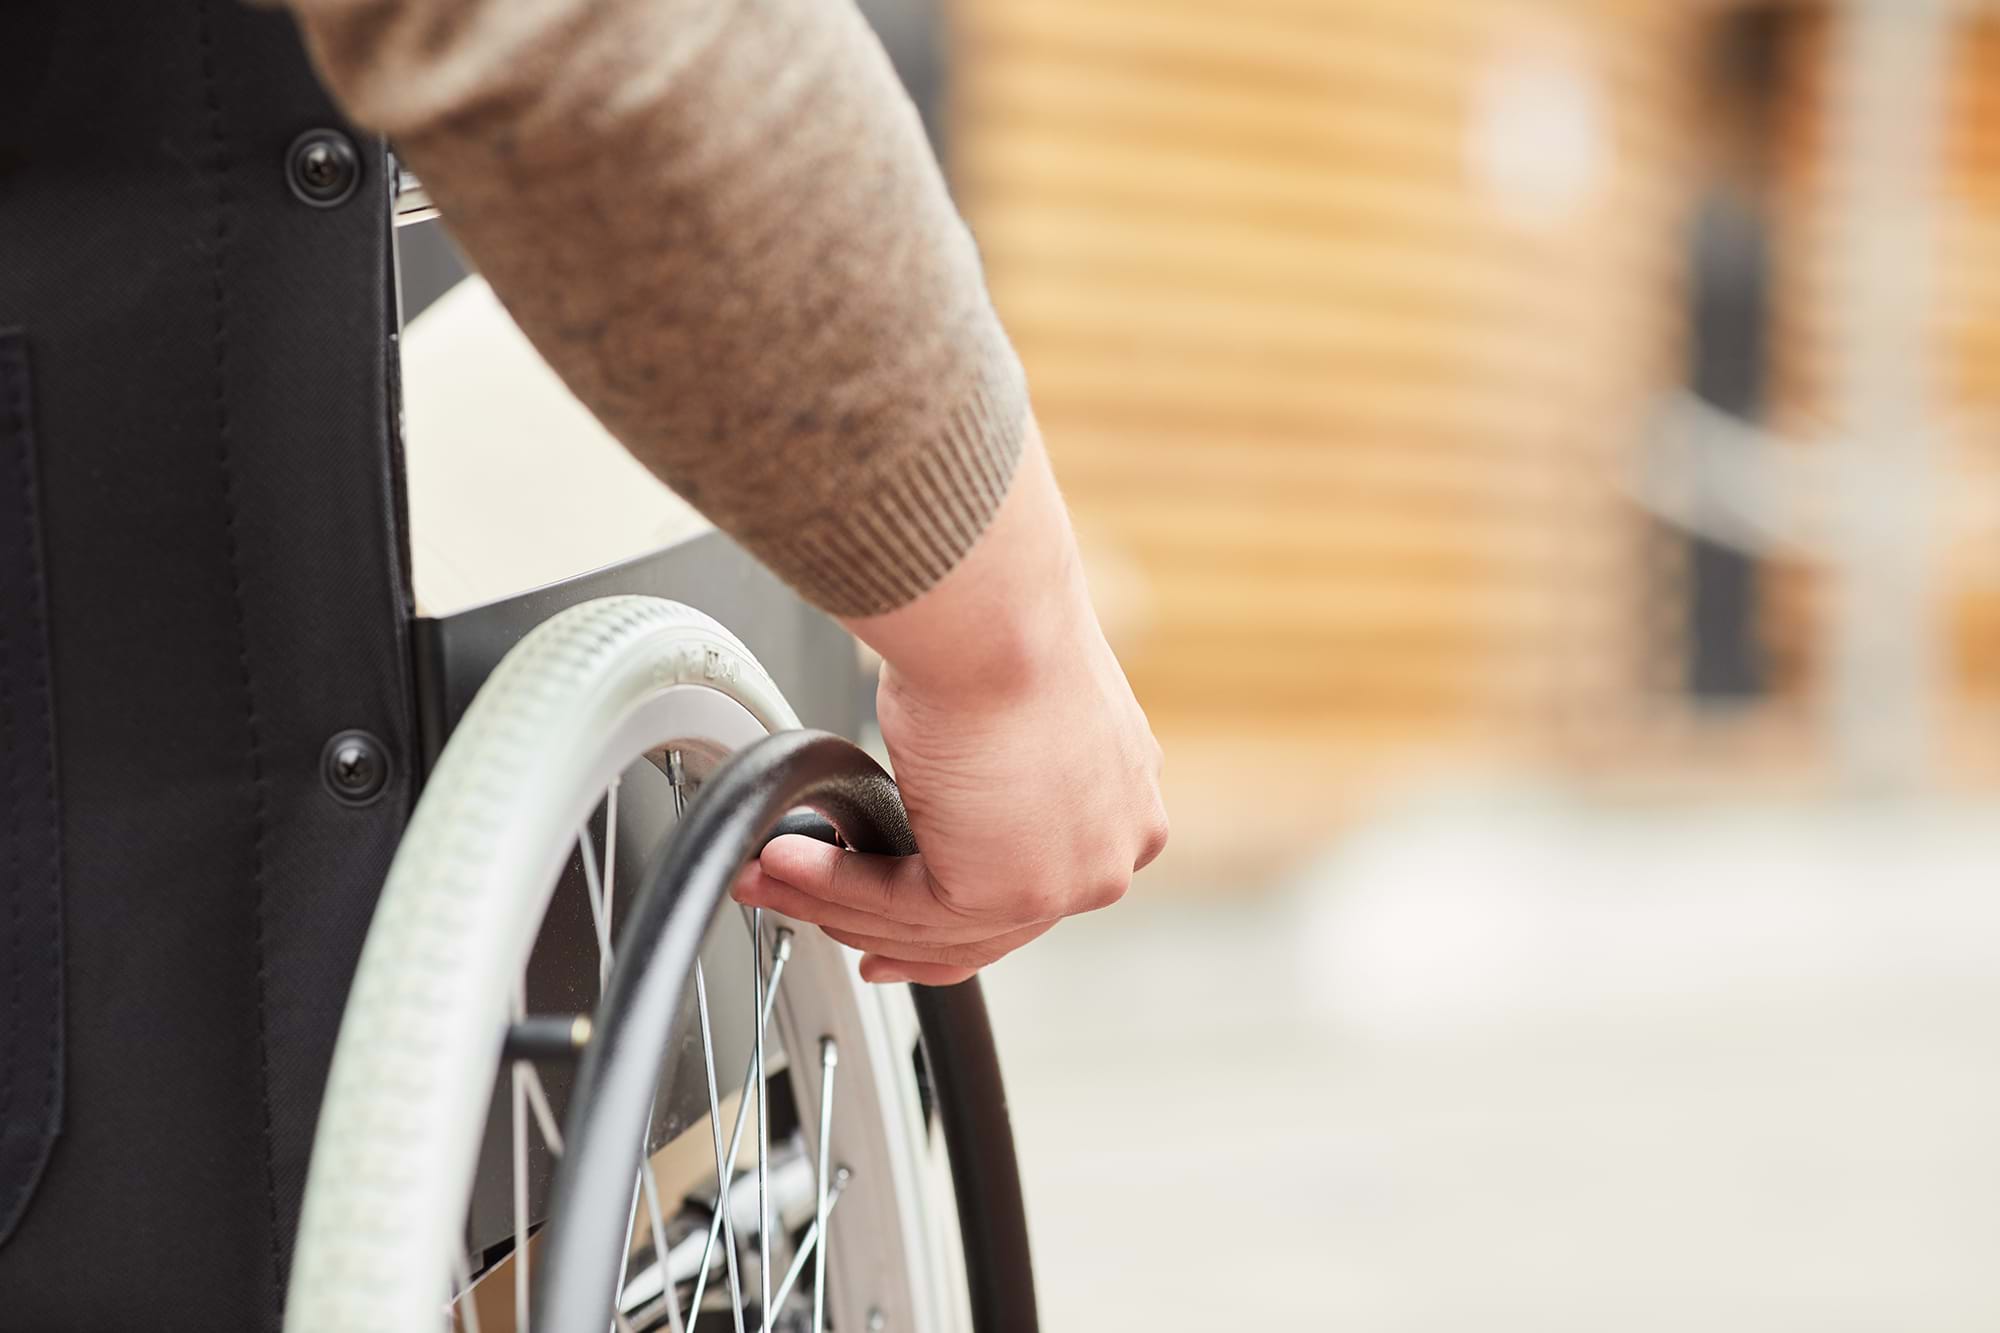 Guide to paraplegic and quadriplegic injuries